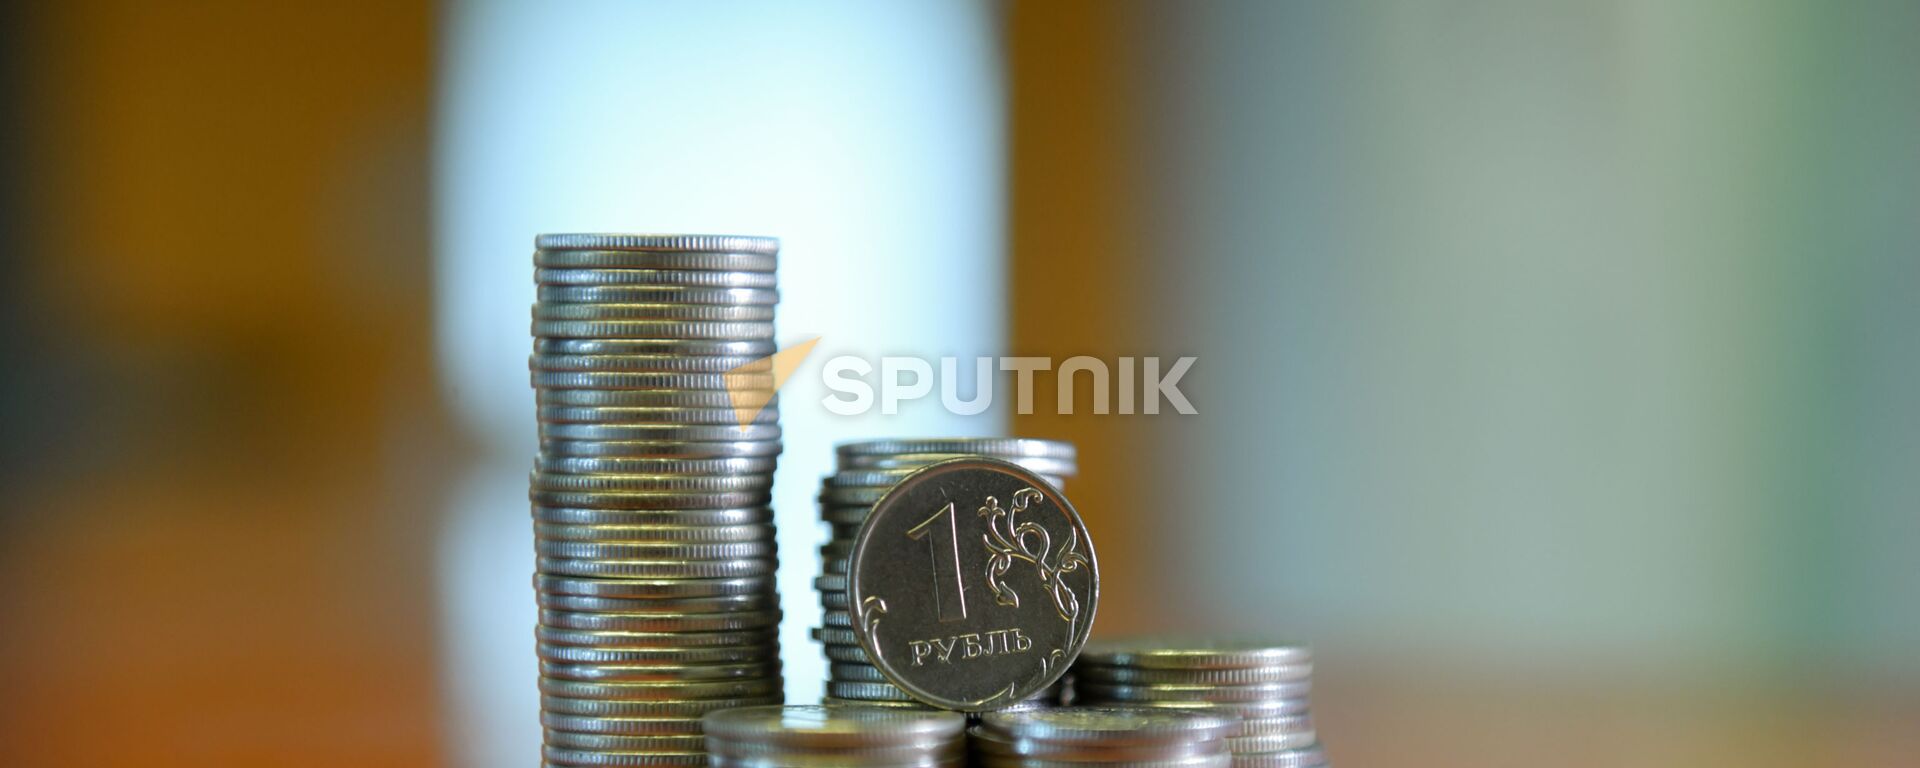 Монета номиналом один рубль  - Sputnik Абхазия, 1920, 14.05.2022